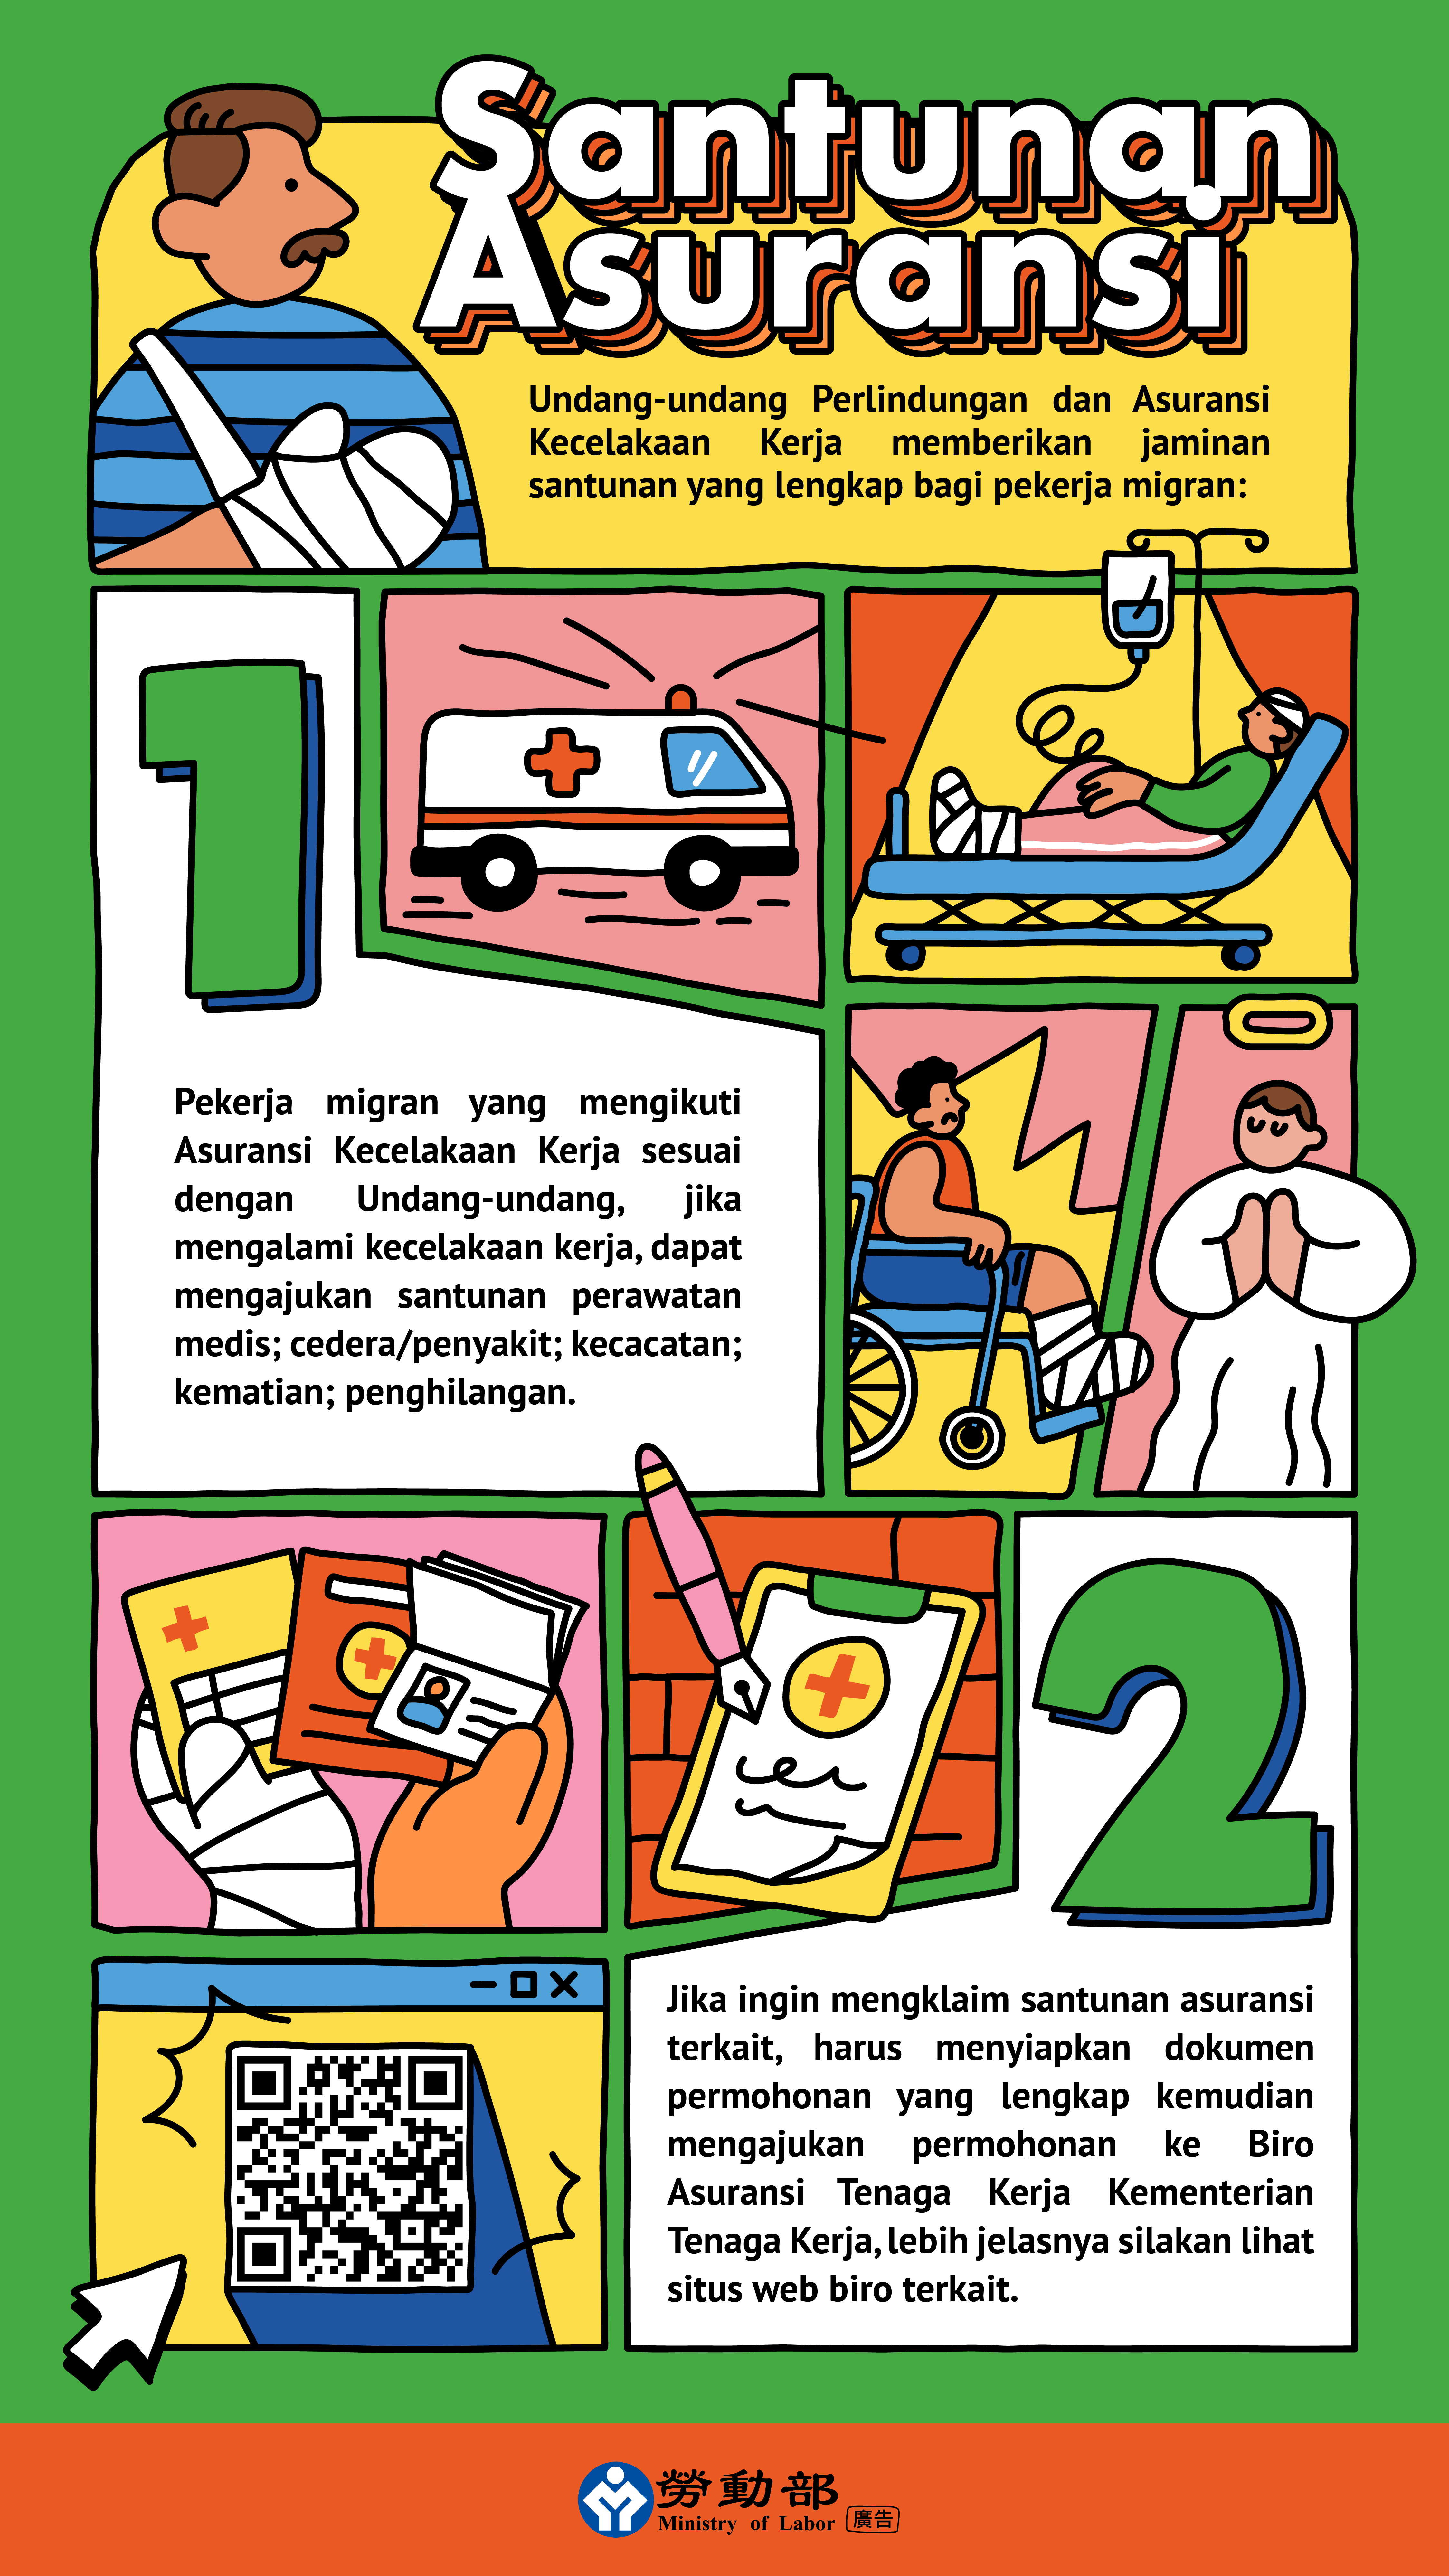 職業災害保險及保護法圖卡-保險給付poster_insurance_印尼文.jpg